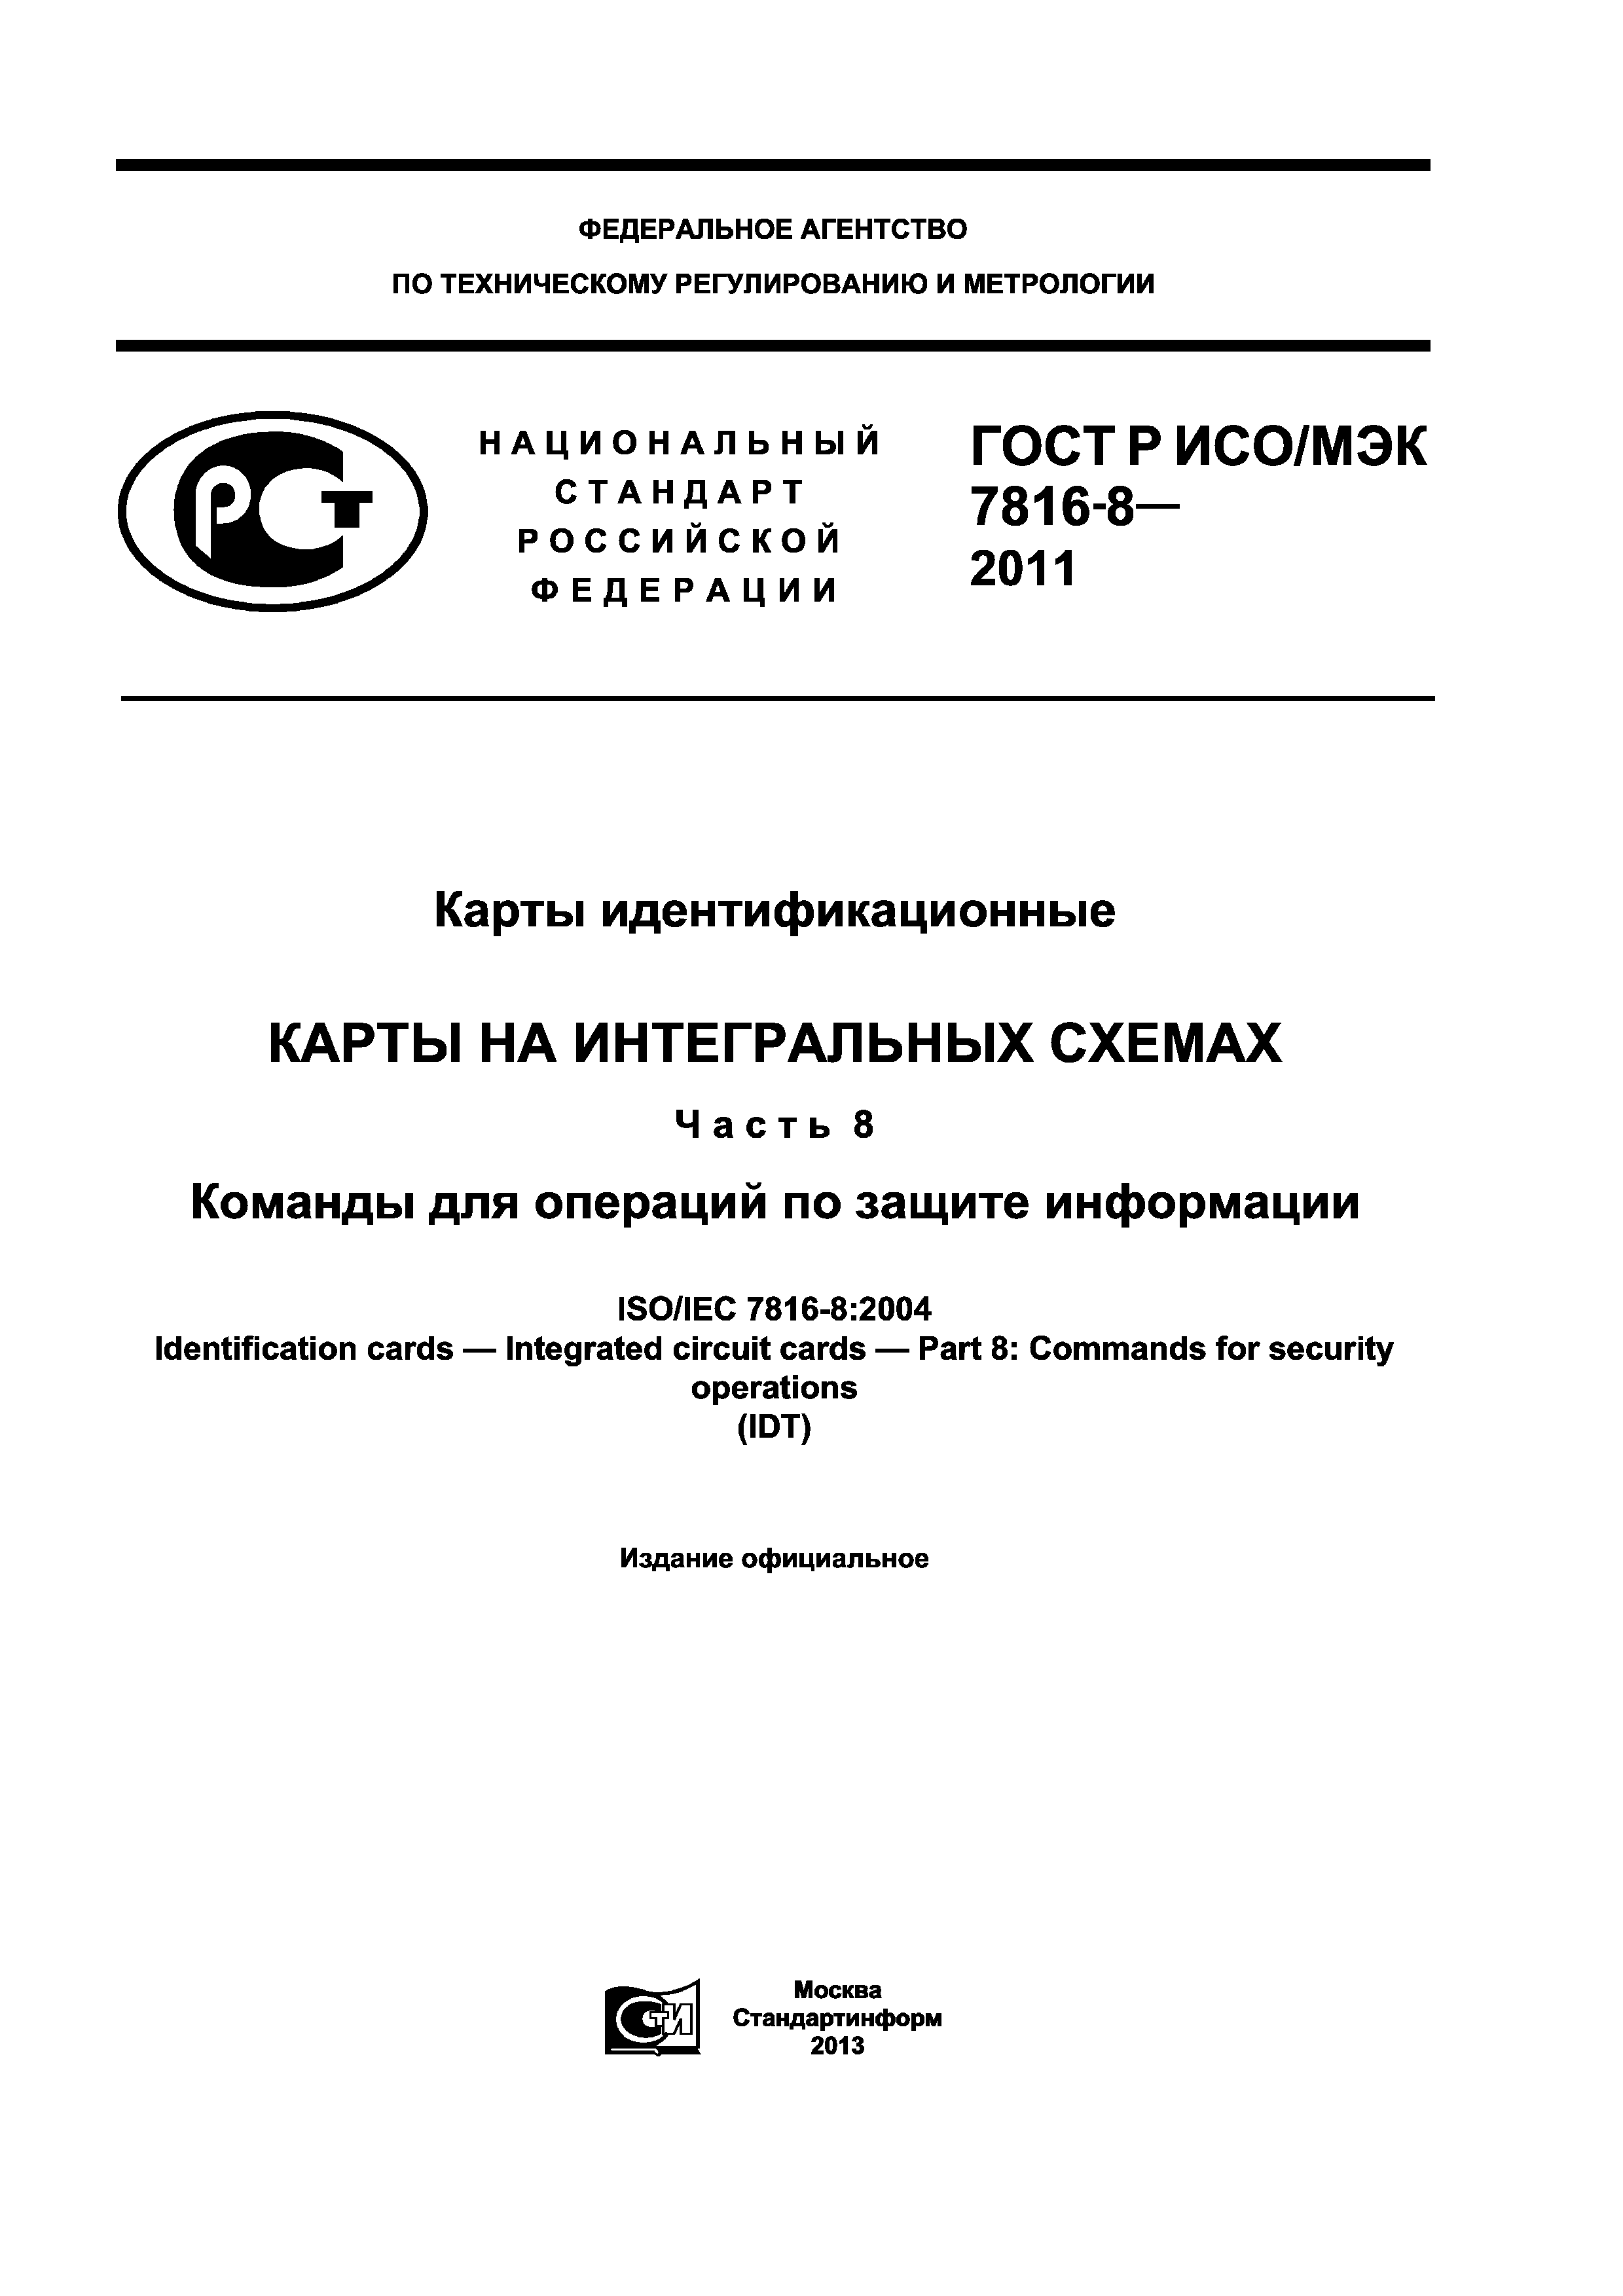 ГОСТ Р ИСО/МЭК 7816-8-2011